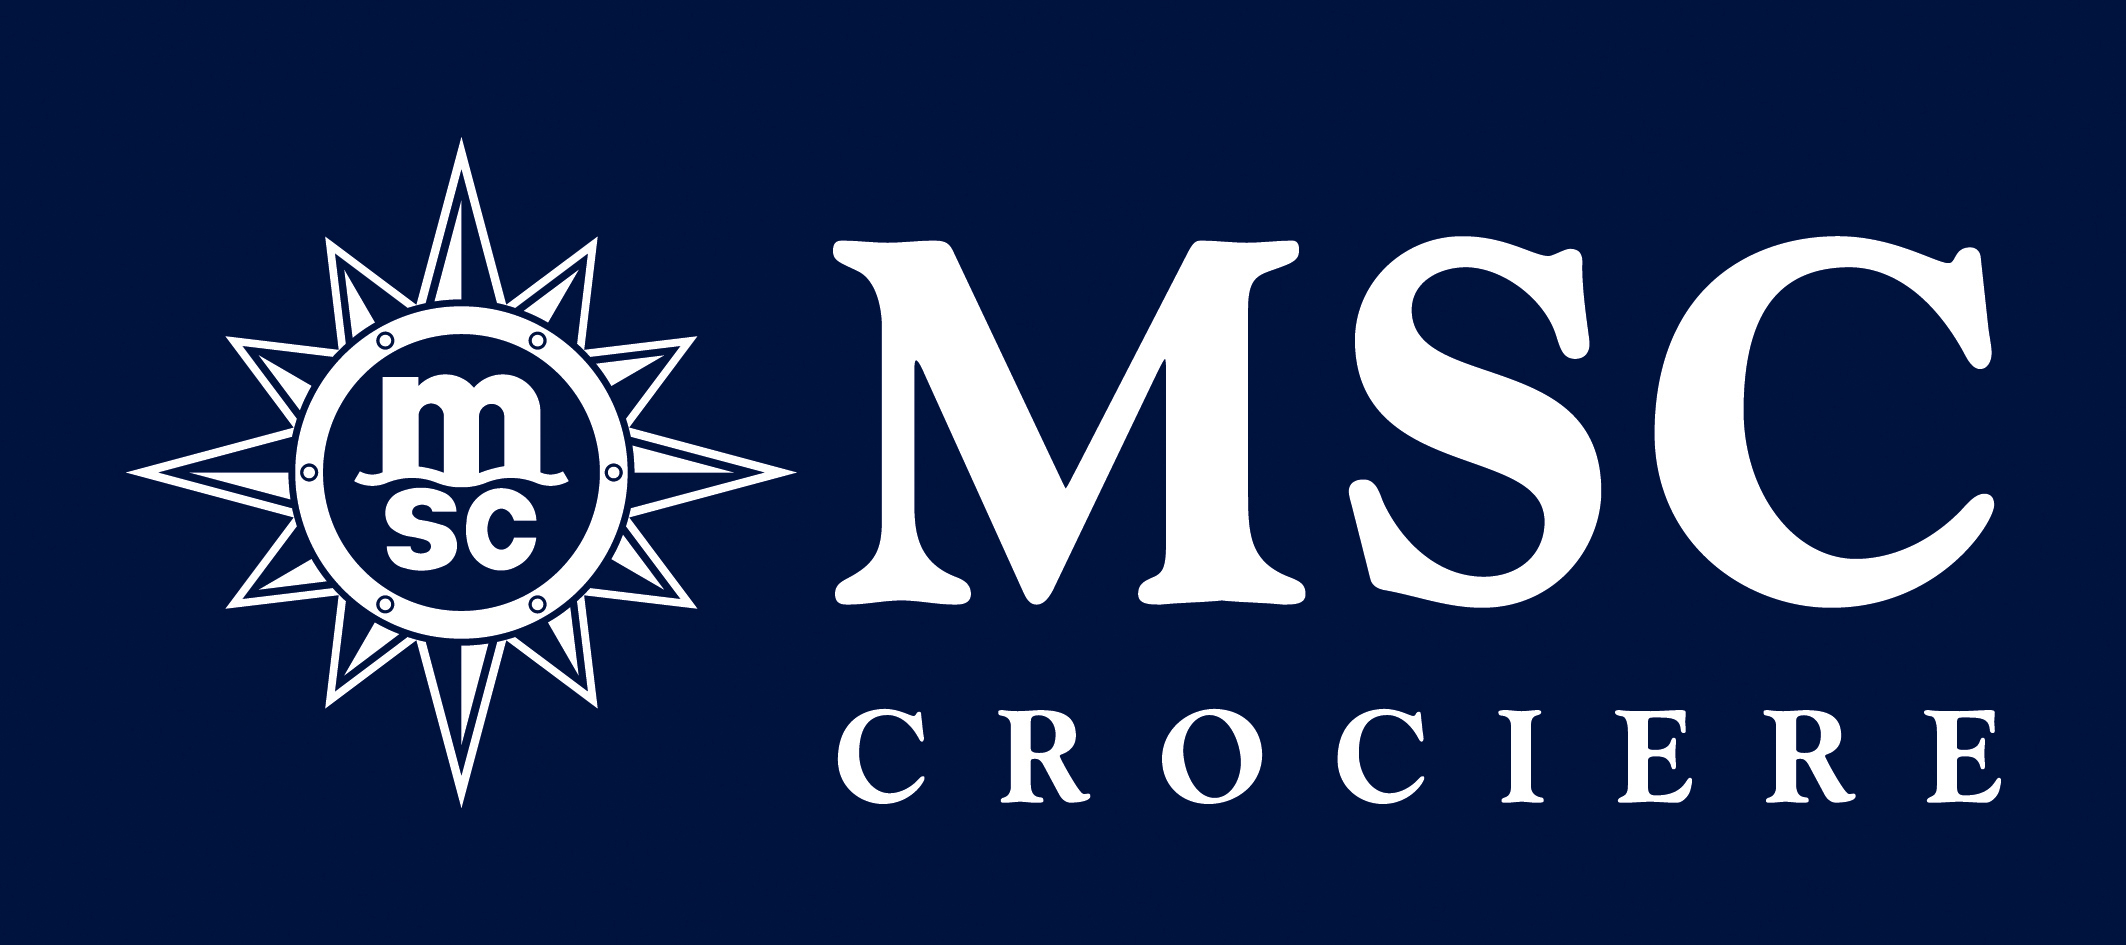 Logo msc